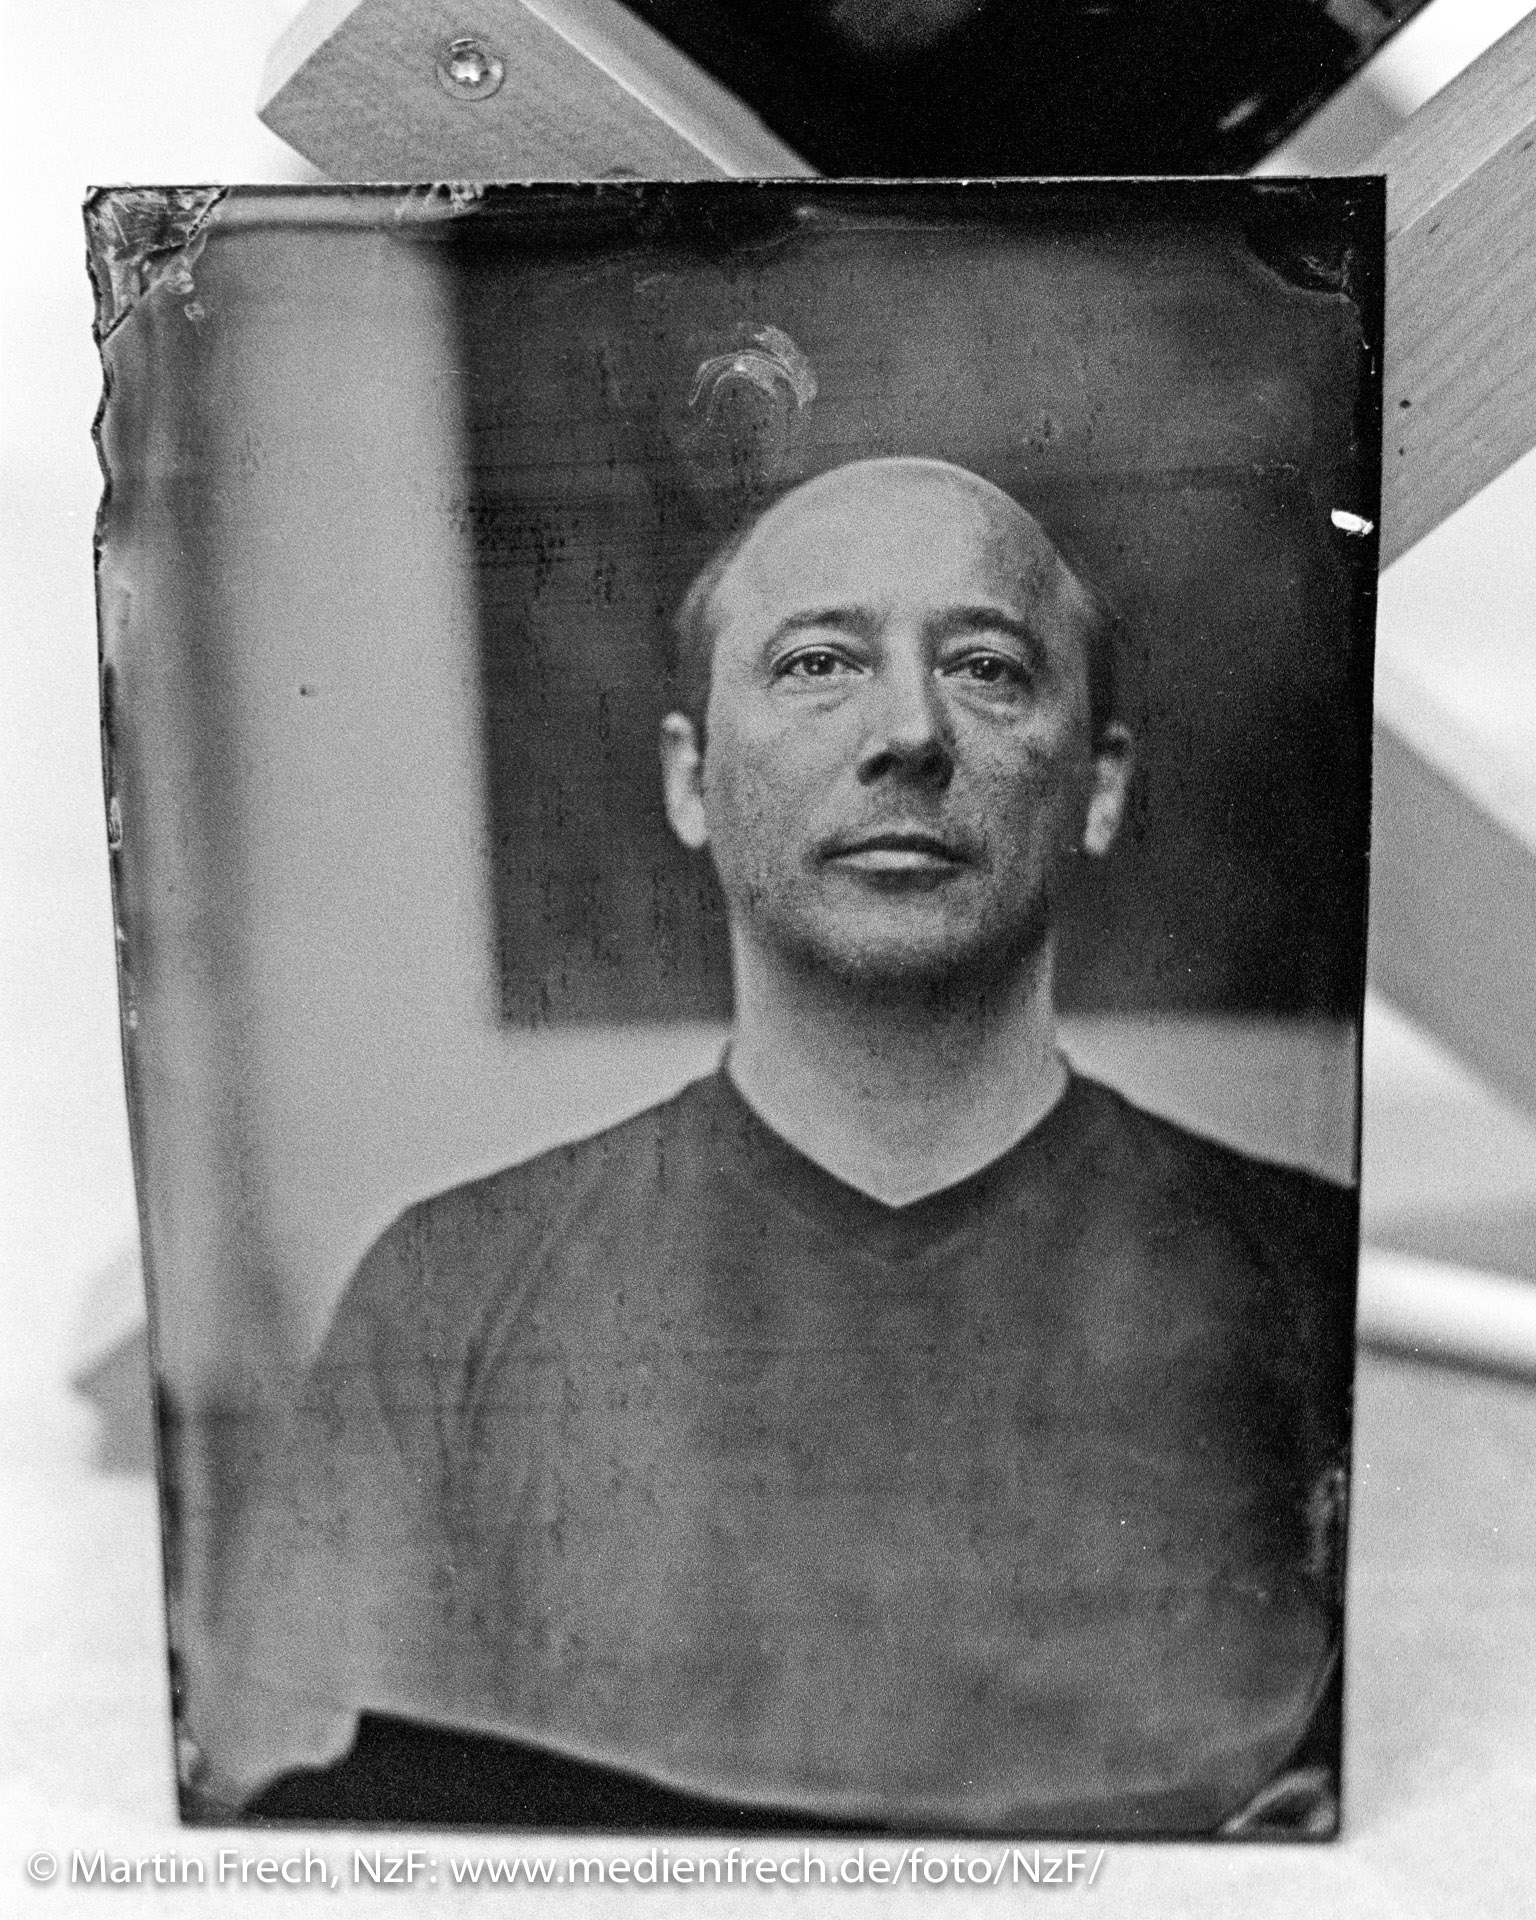 © Martin Frech: Fotografie eines Porträts, das ich als Ambrotypie auf schwarzem Glas angefertigt habe. Repro eines Silbergelatine-Abzugs.